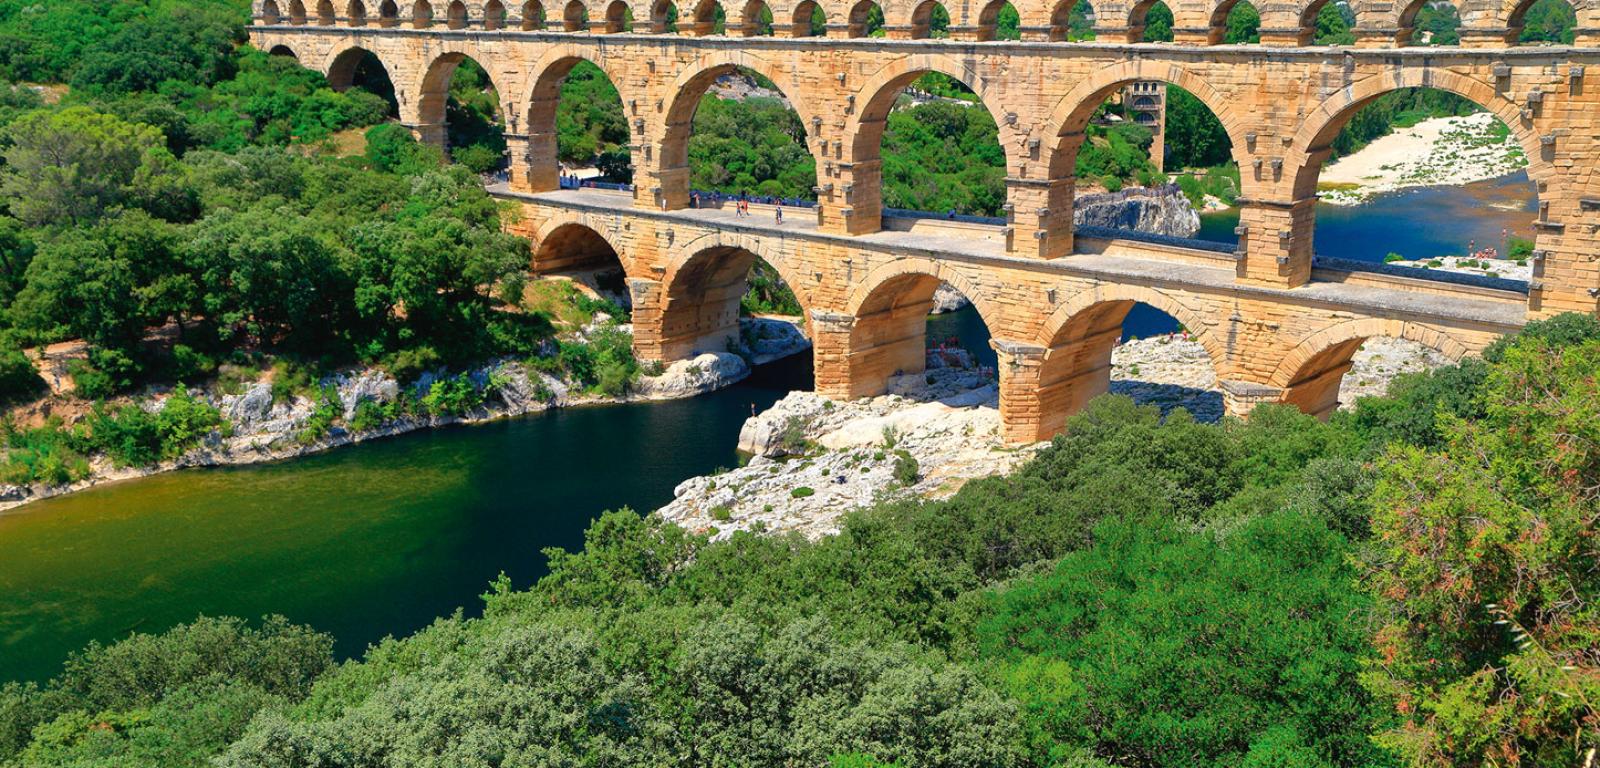 Rzymski akwedukt (tutaj: Pont du Gard zbudowany w I w. p.n.e.) oparty na konstrukcji łukowej. Woda płynęła w najwyższej części, dolne służyły jako mosty.